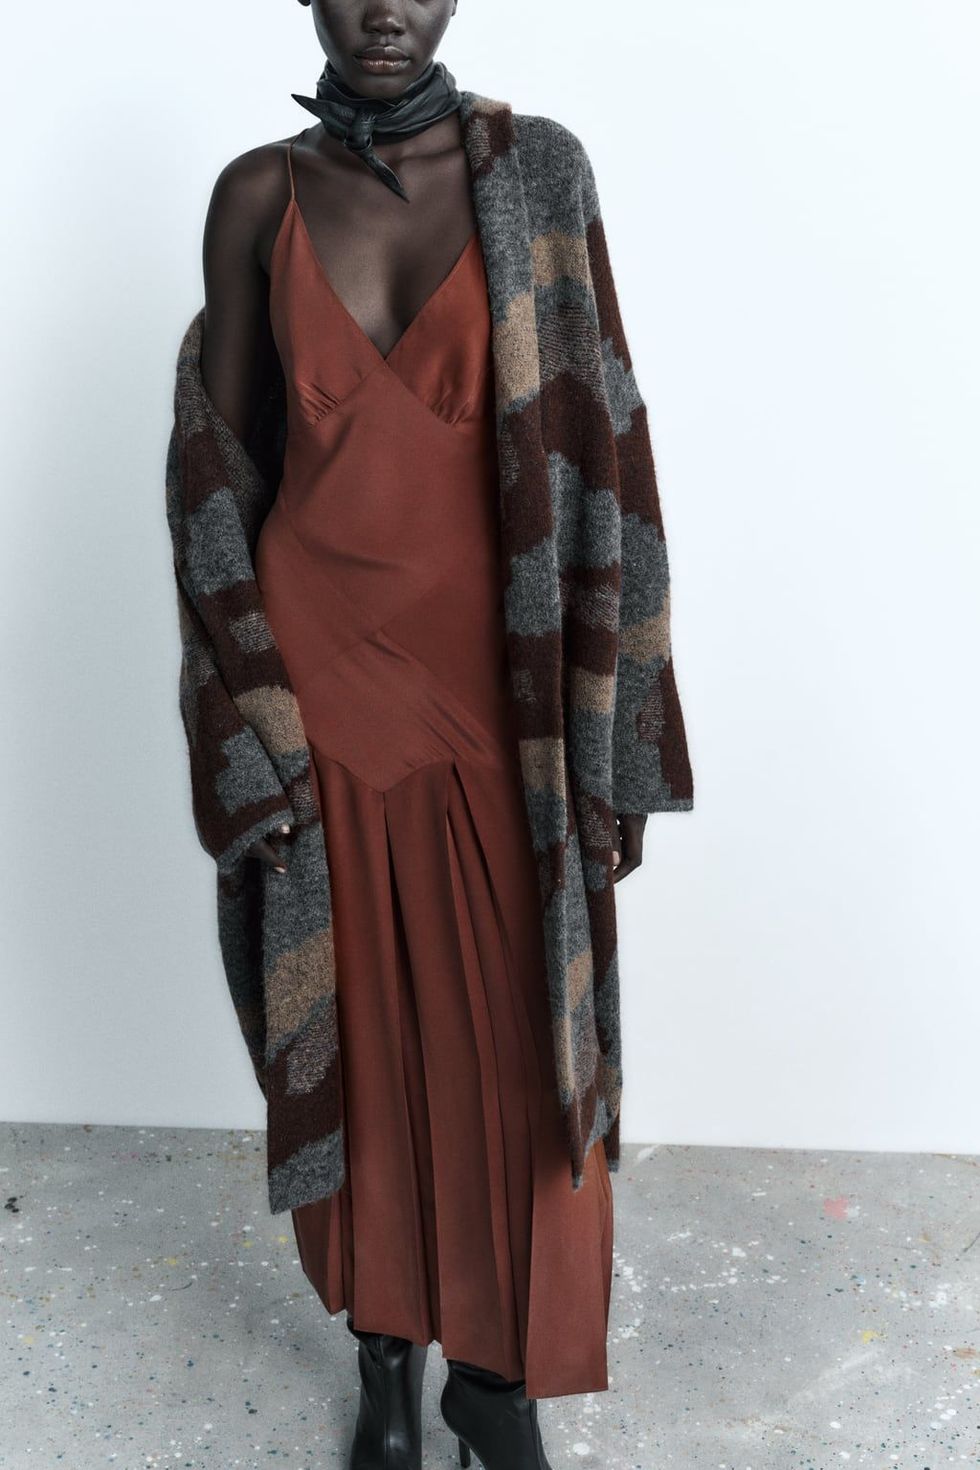 El abrigo estilo lujo silencioso que Zara agota cada semana: de